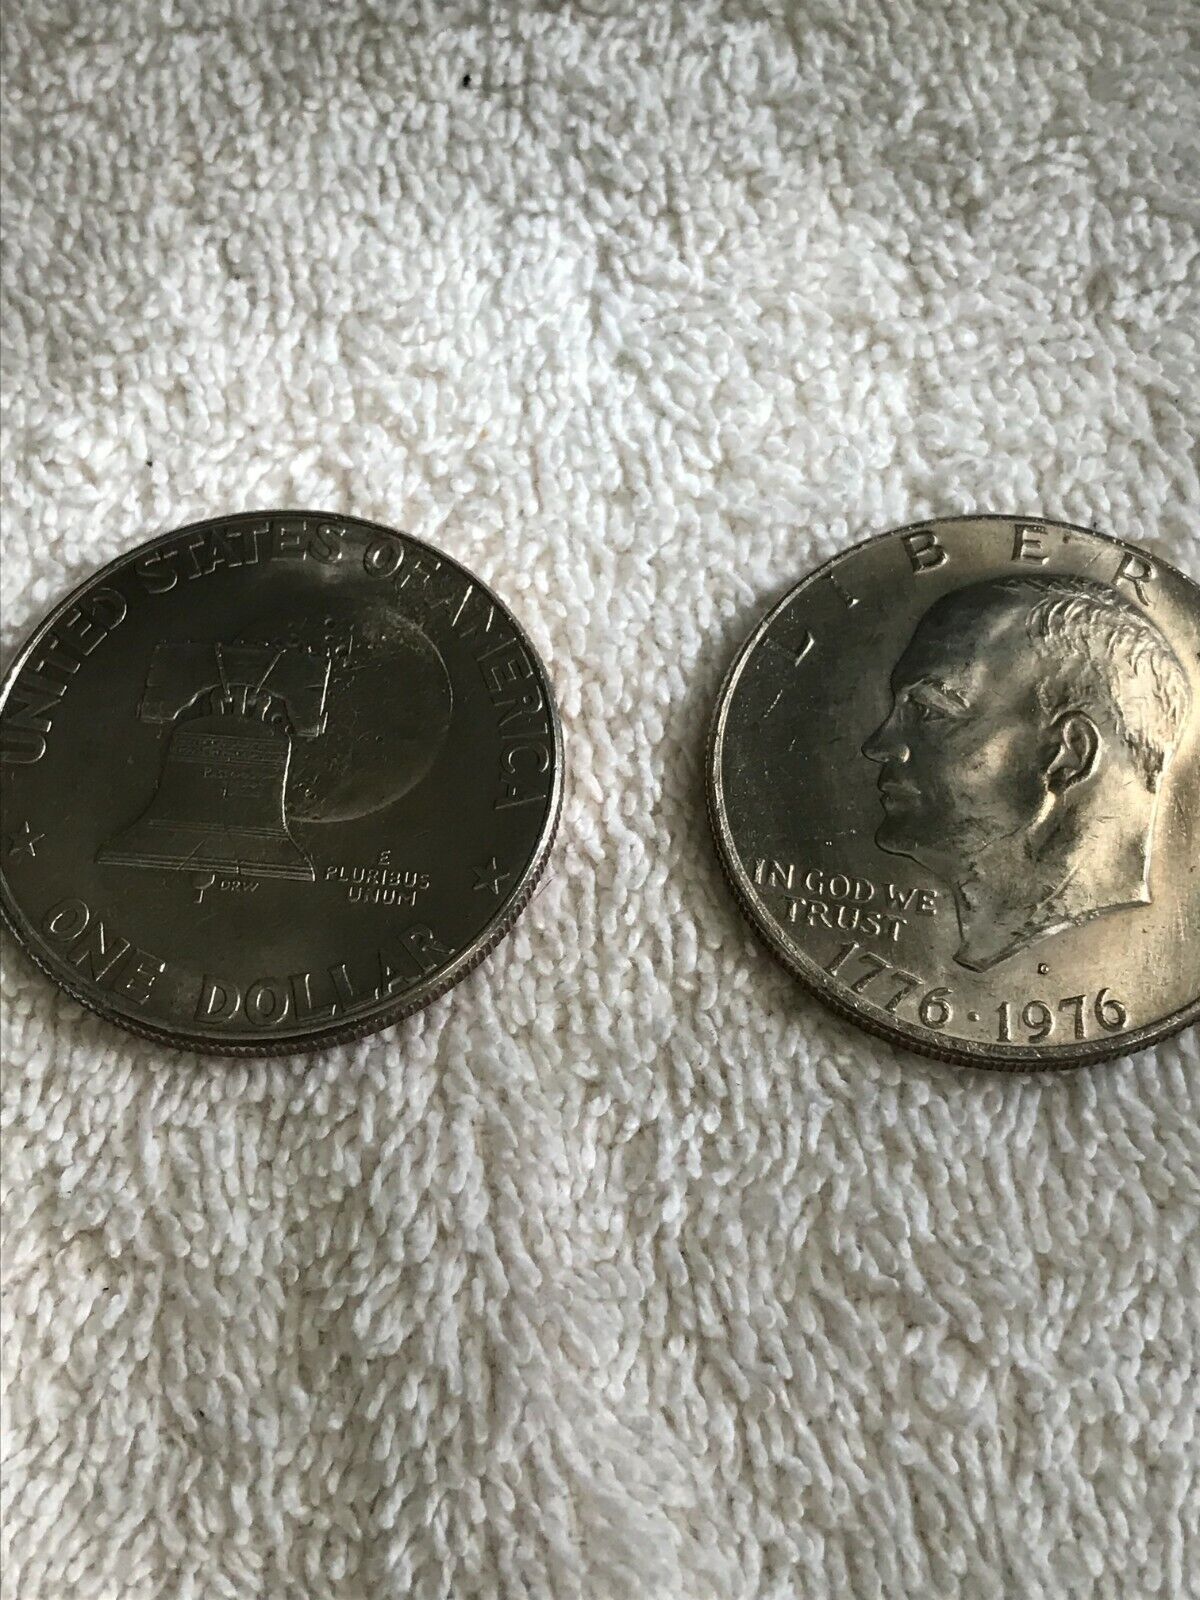 *1776-1976 BiCentennial IKE Dollars 2 coin set